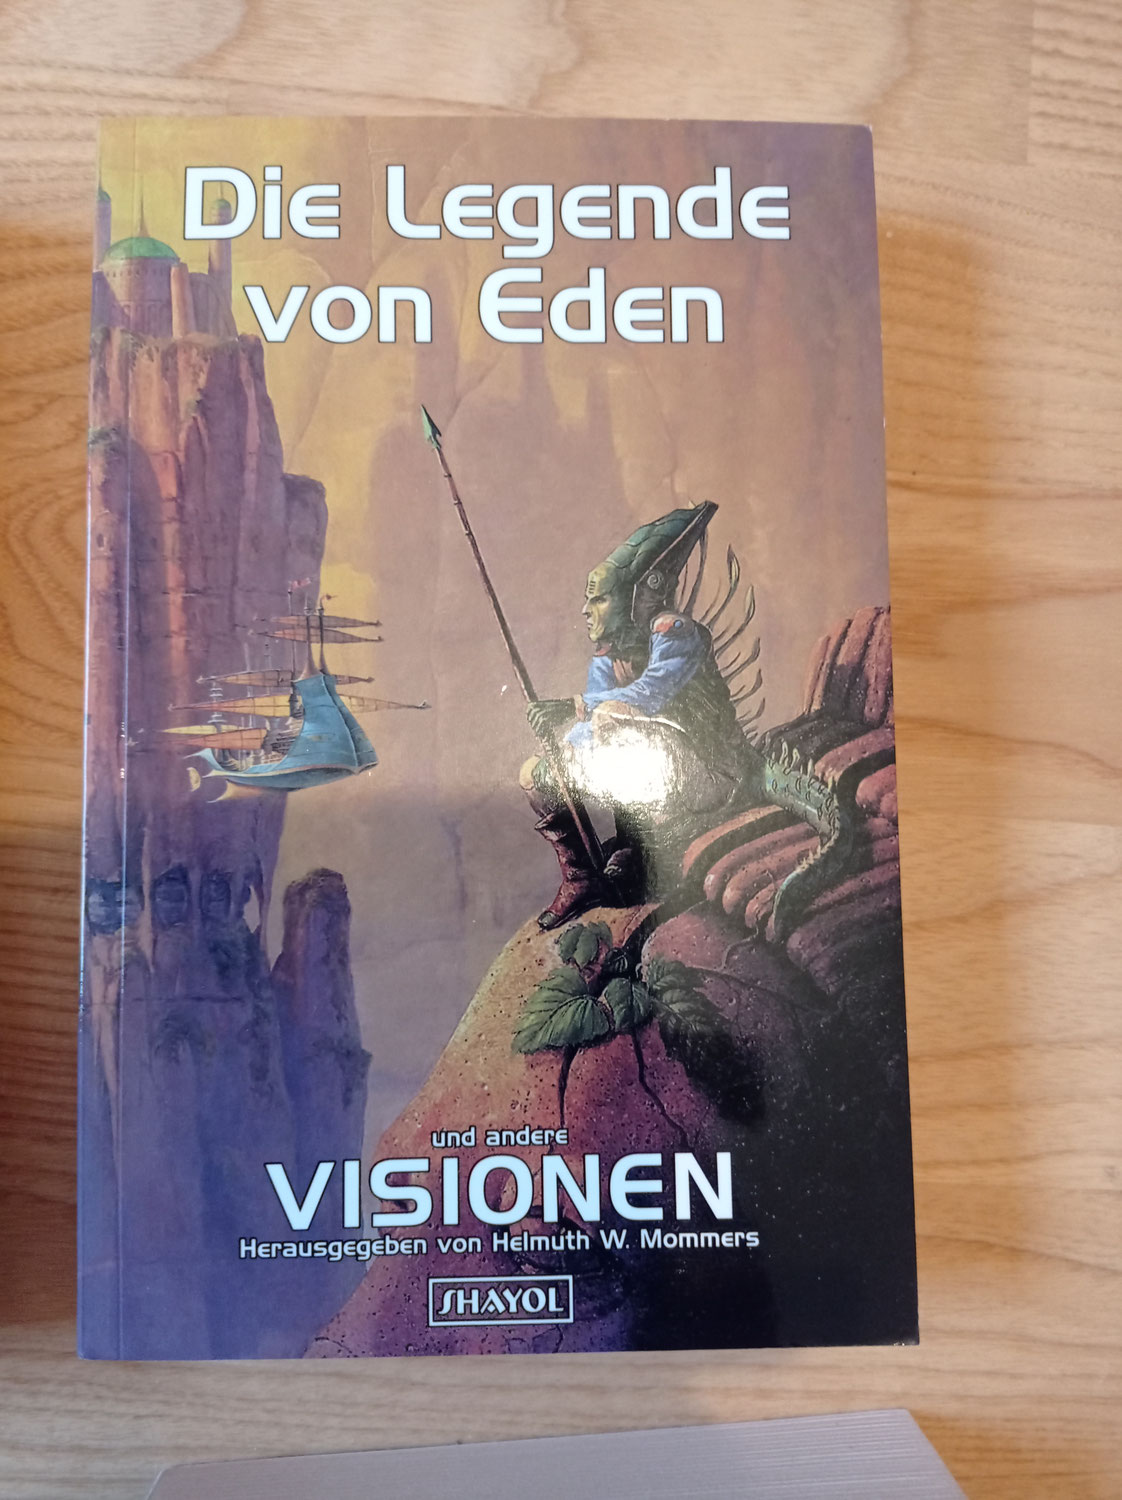 Visionen 2: Die Legende von Eden herausgegeben von Helmuth W. Mommers